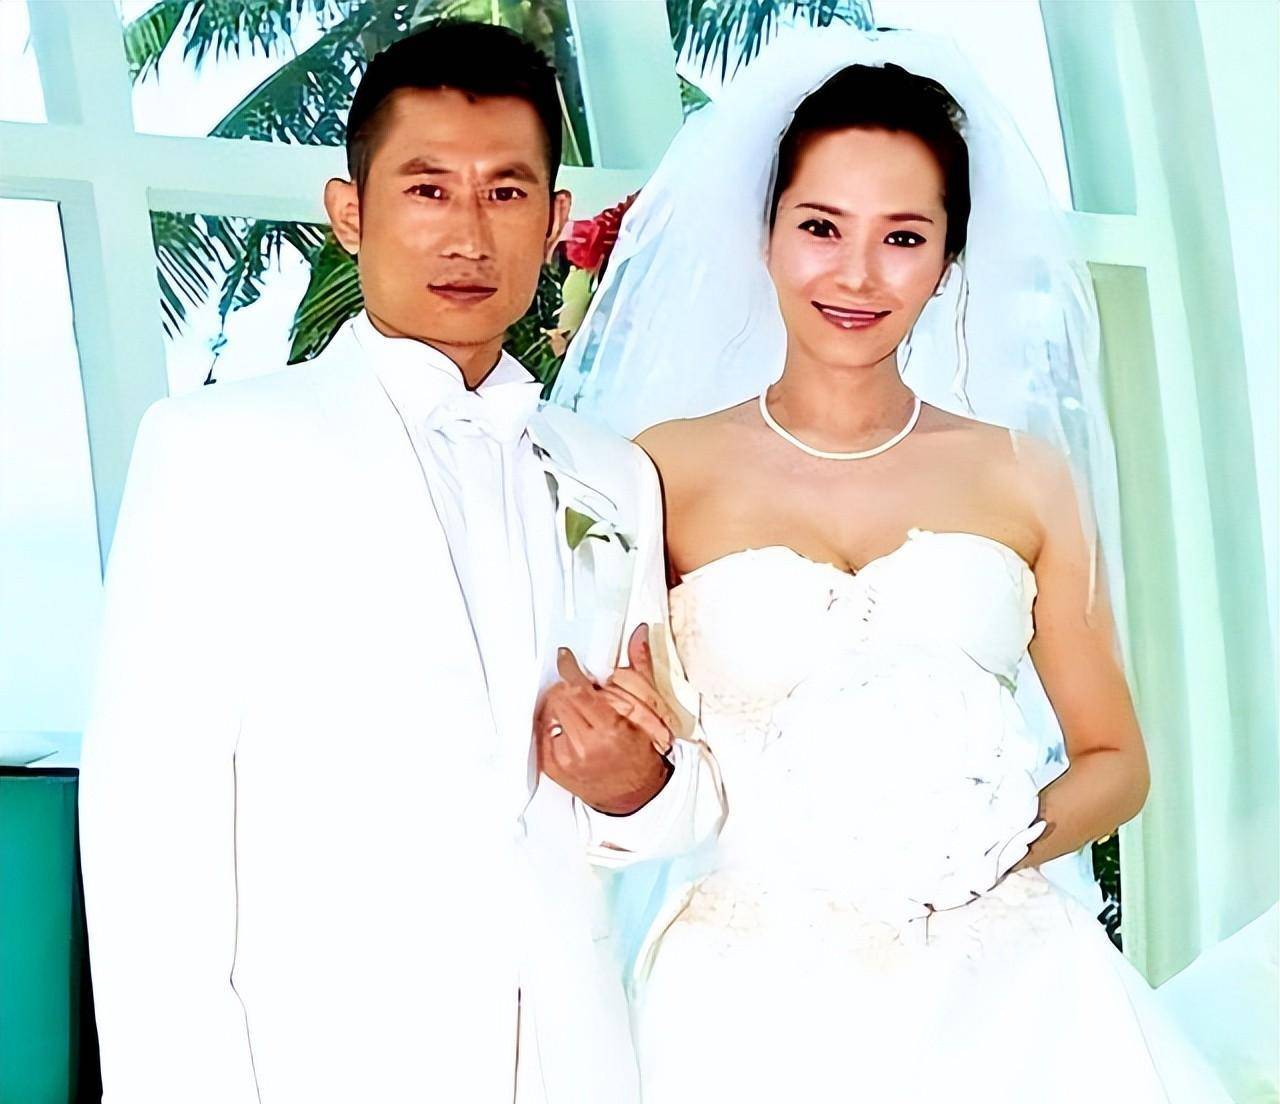 12年前,那个倒贴3套房嫁到河南农村的混血港姐郭羡妮,怎样了